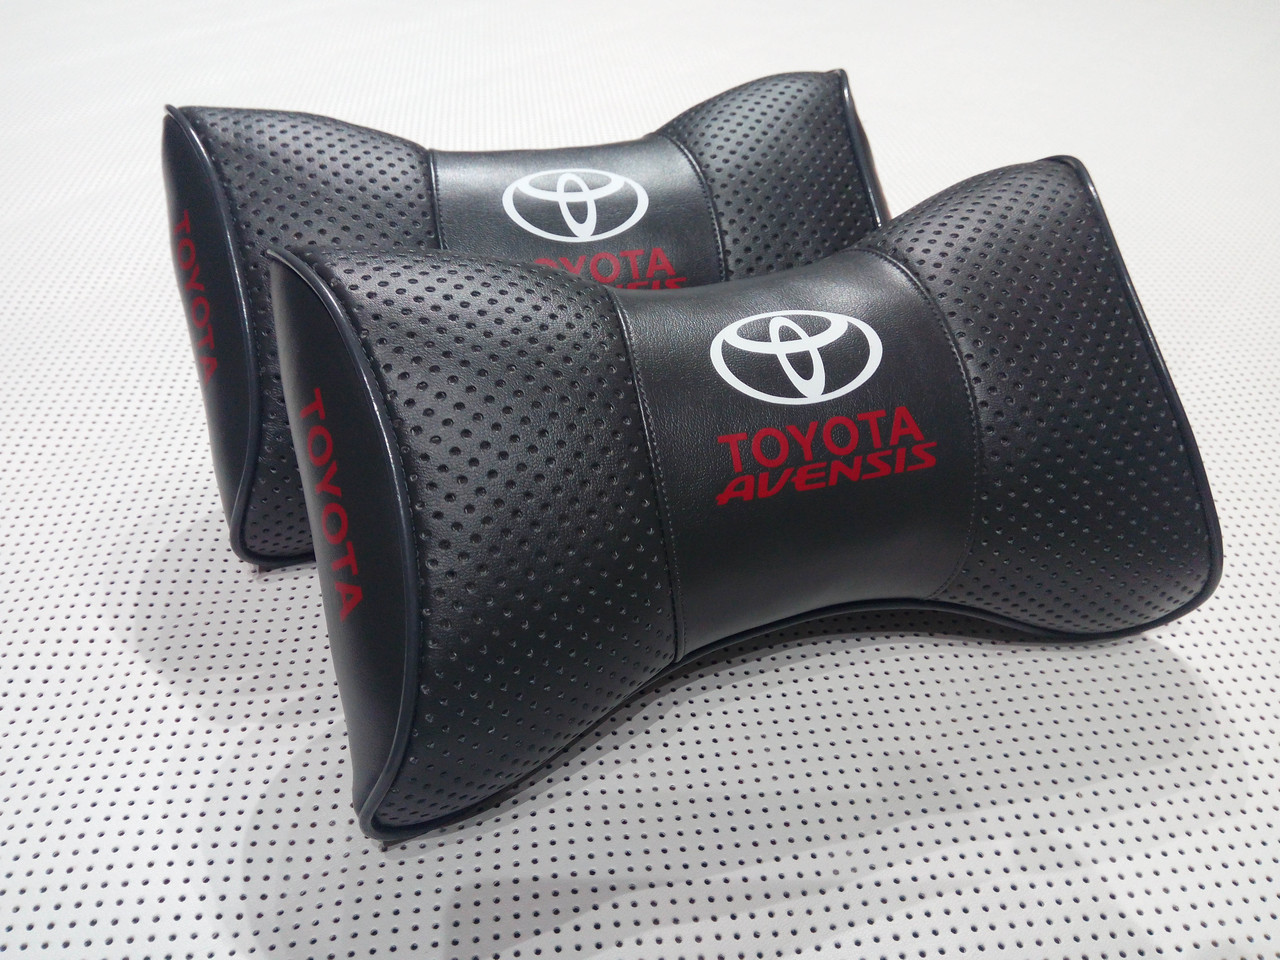 Подушки на підголовник Toyota Avensis темно-сіра 1 шт